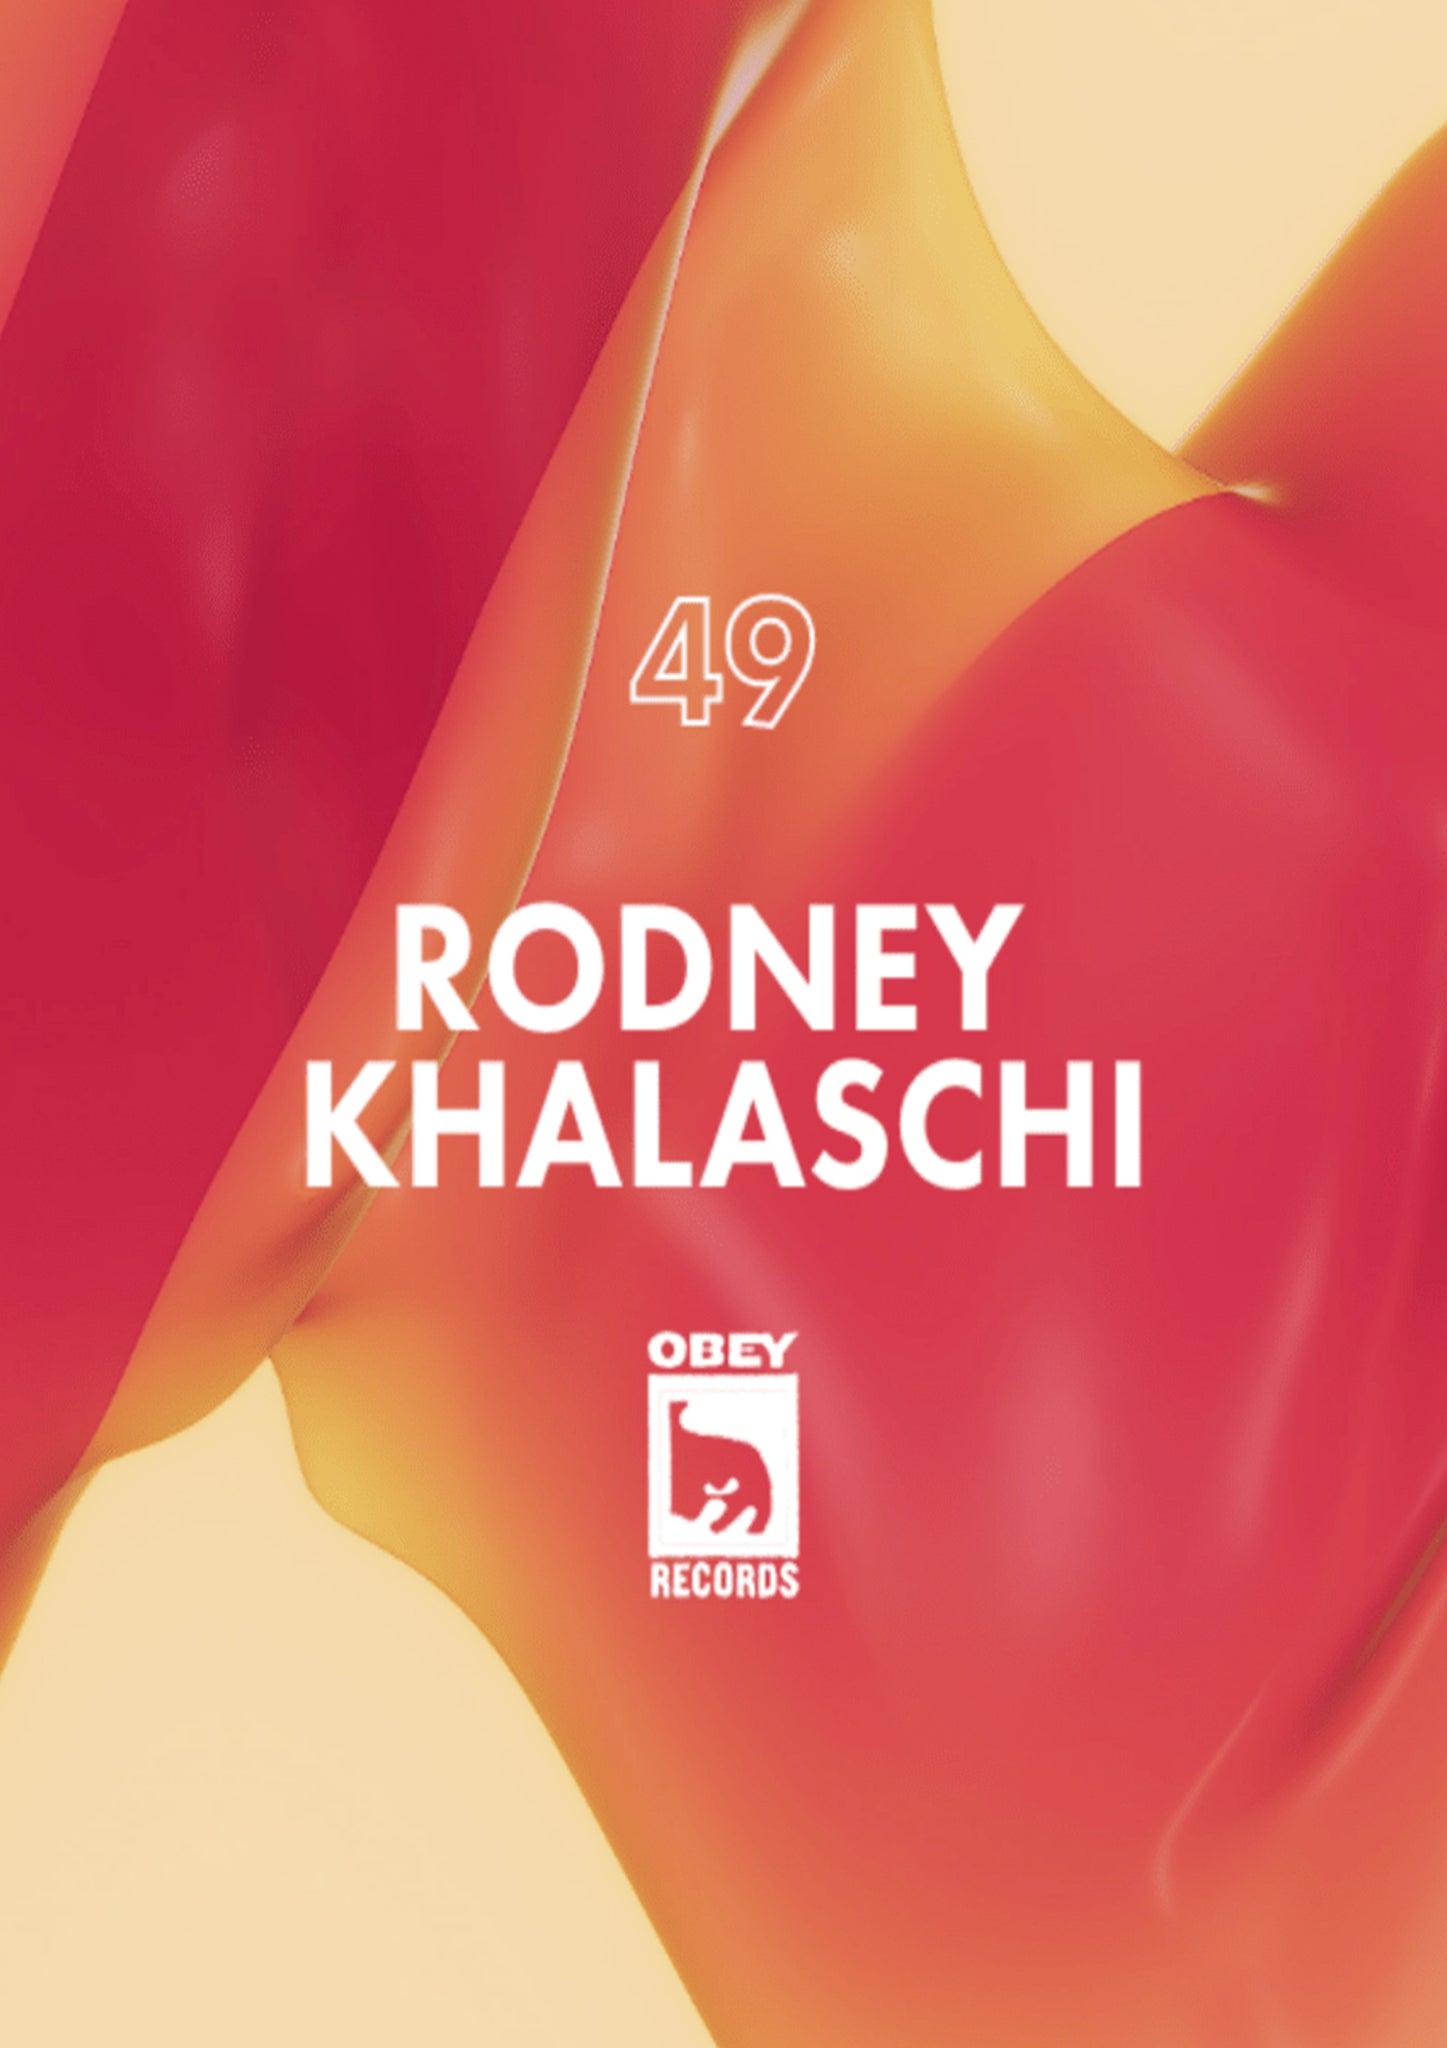 Obey Records / Ep. 49: Rodney Khalaschi